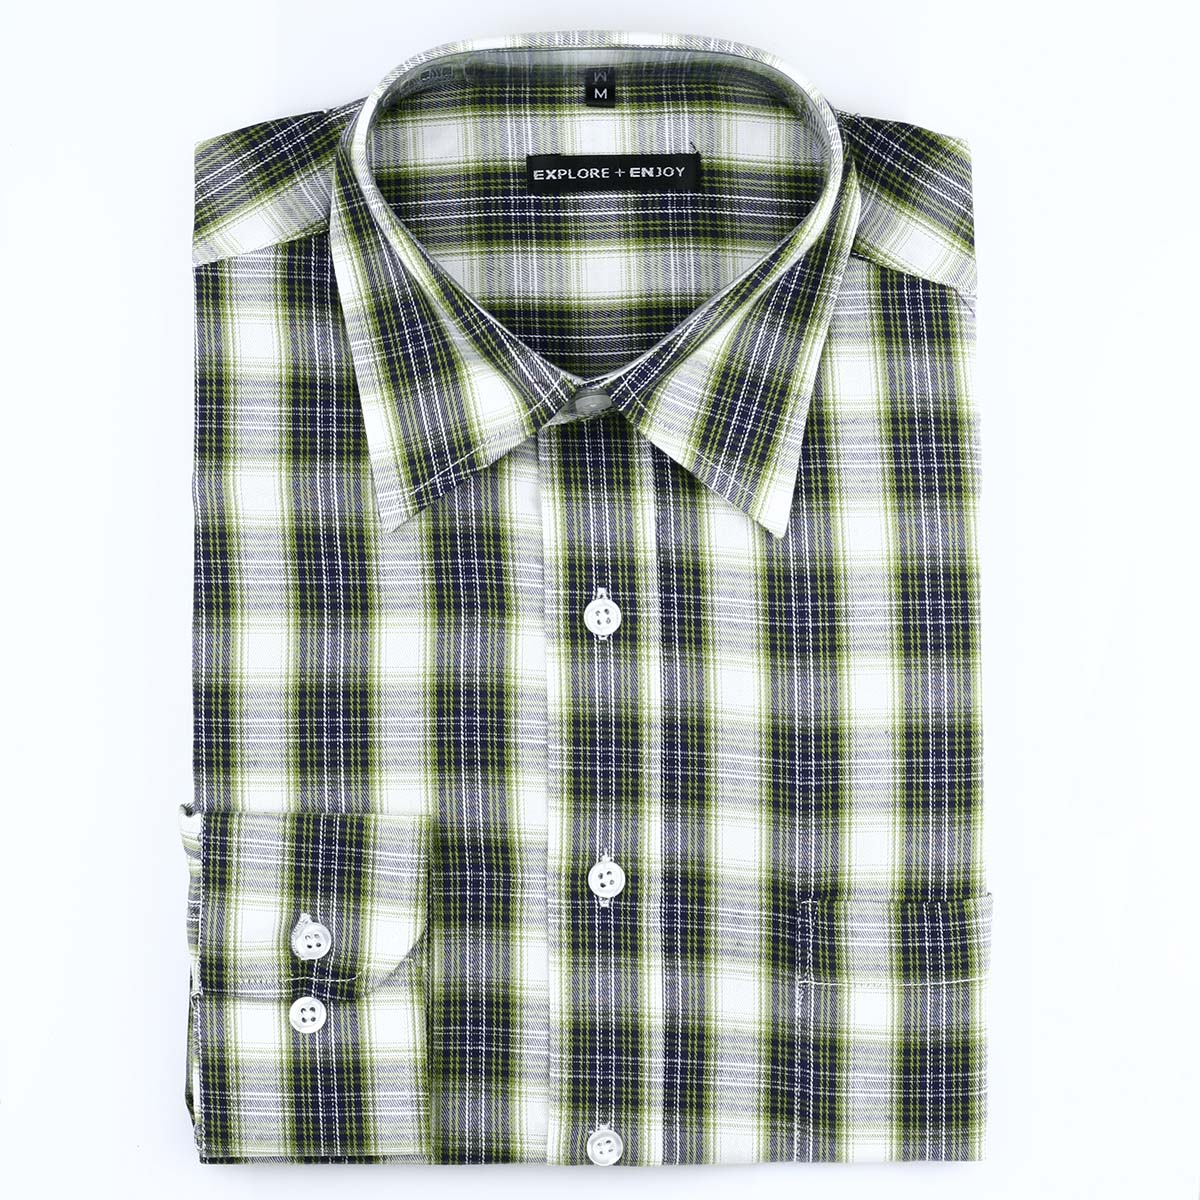 外贸商务休闲衬衫 40支全棉男士长袖衬衫 宽松型 S06墨绿大格纹